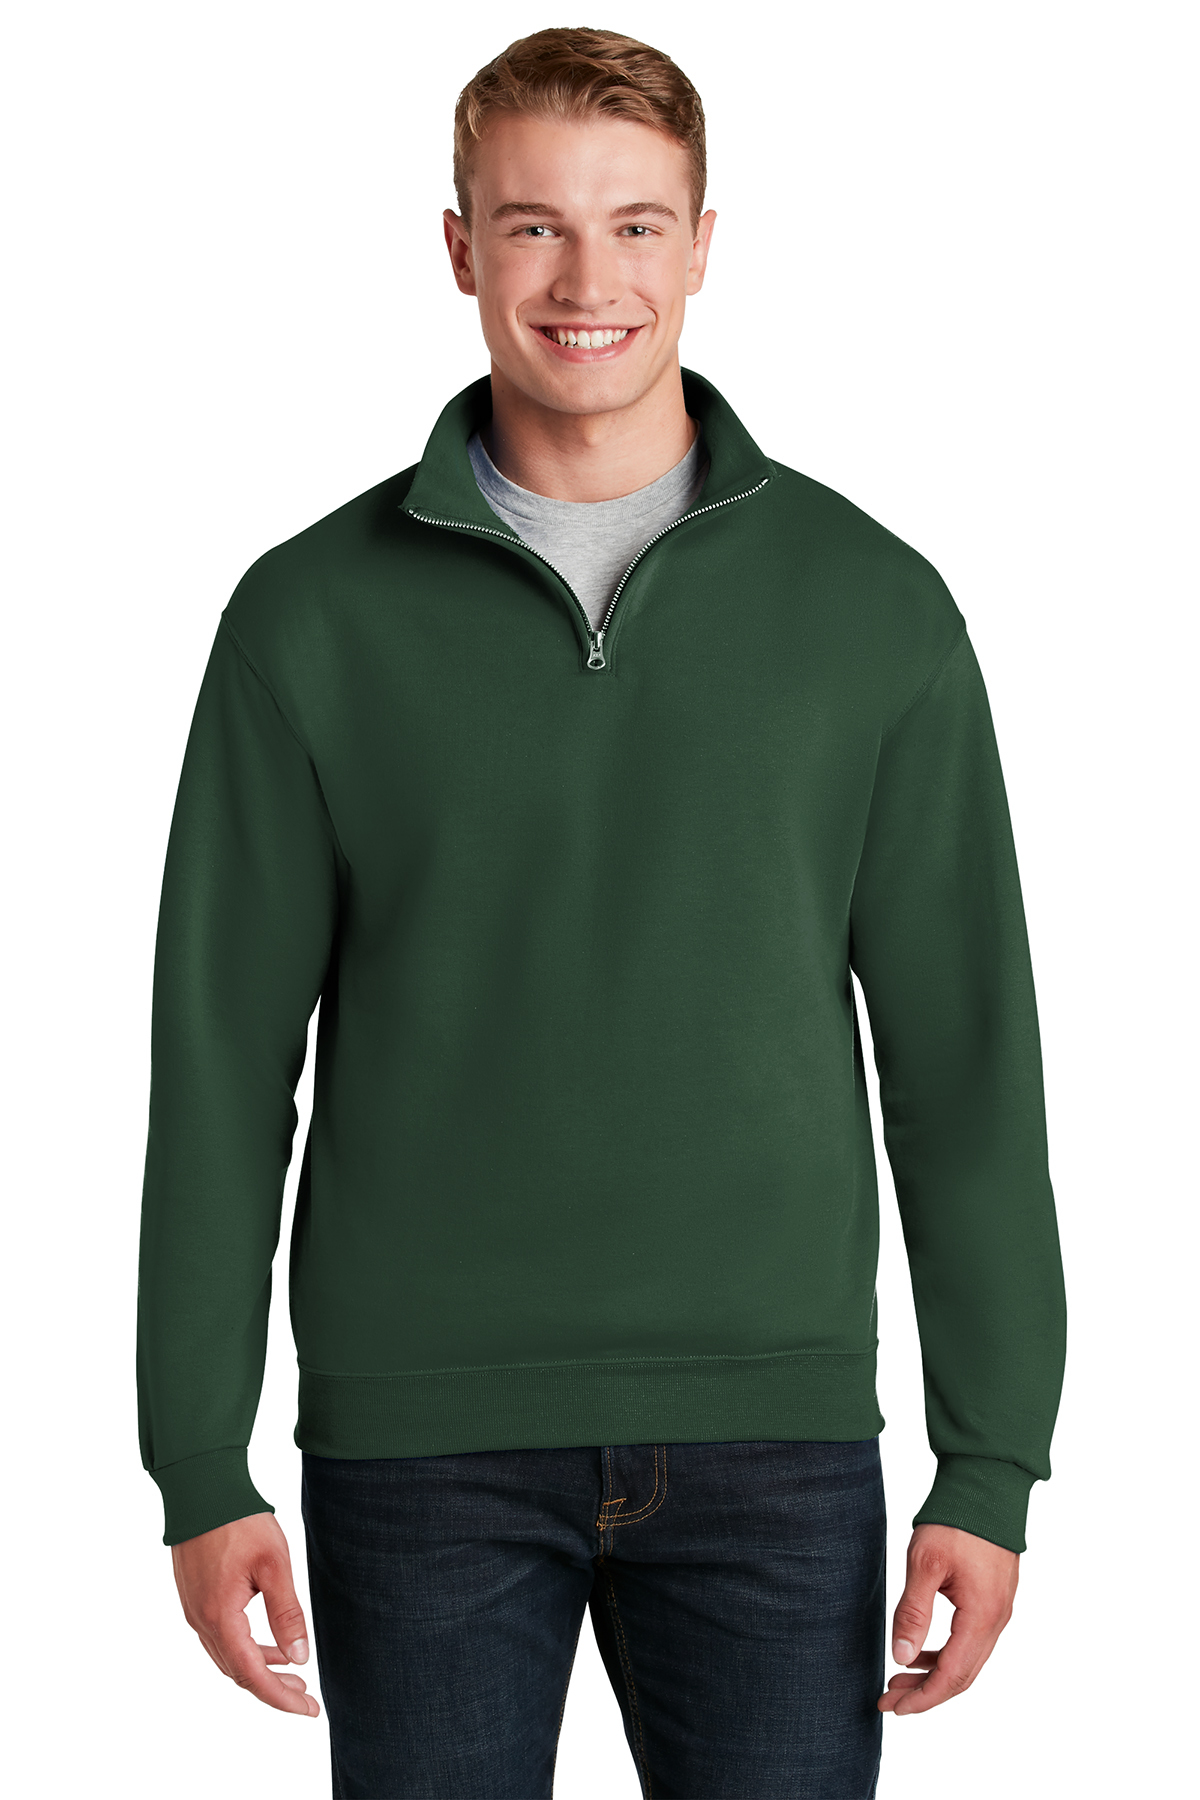 Jerzees - NuBlend 1/4-Zip Cadet Collar Sweatshirt | Product | Company ...